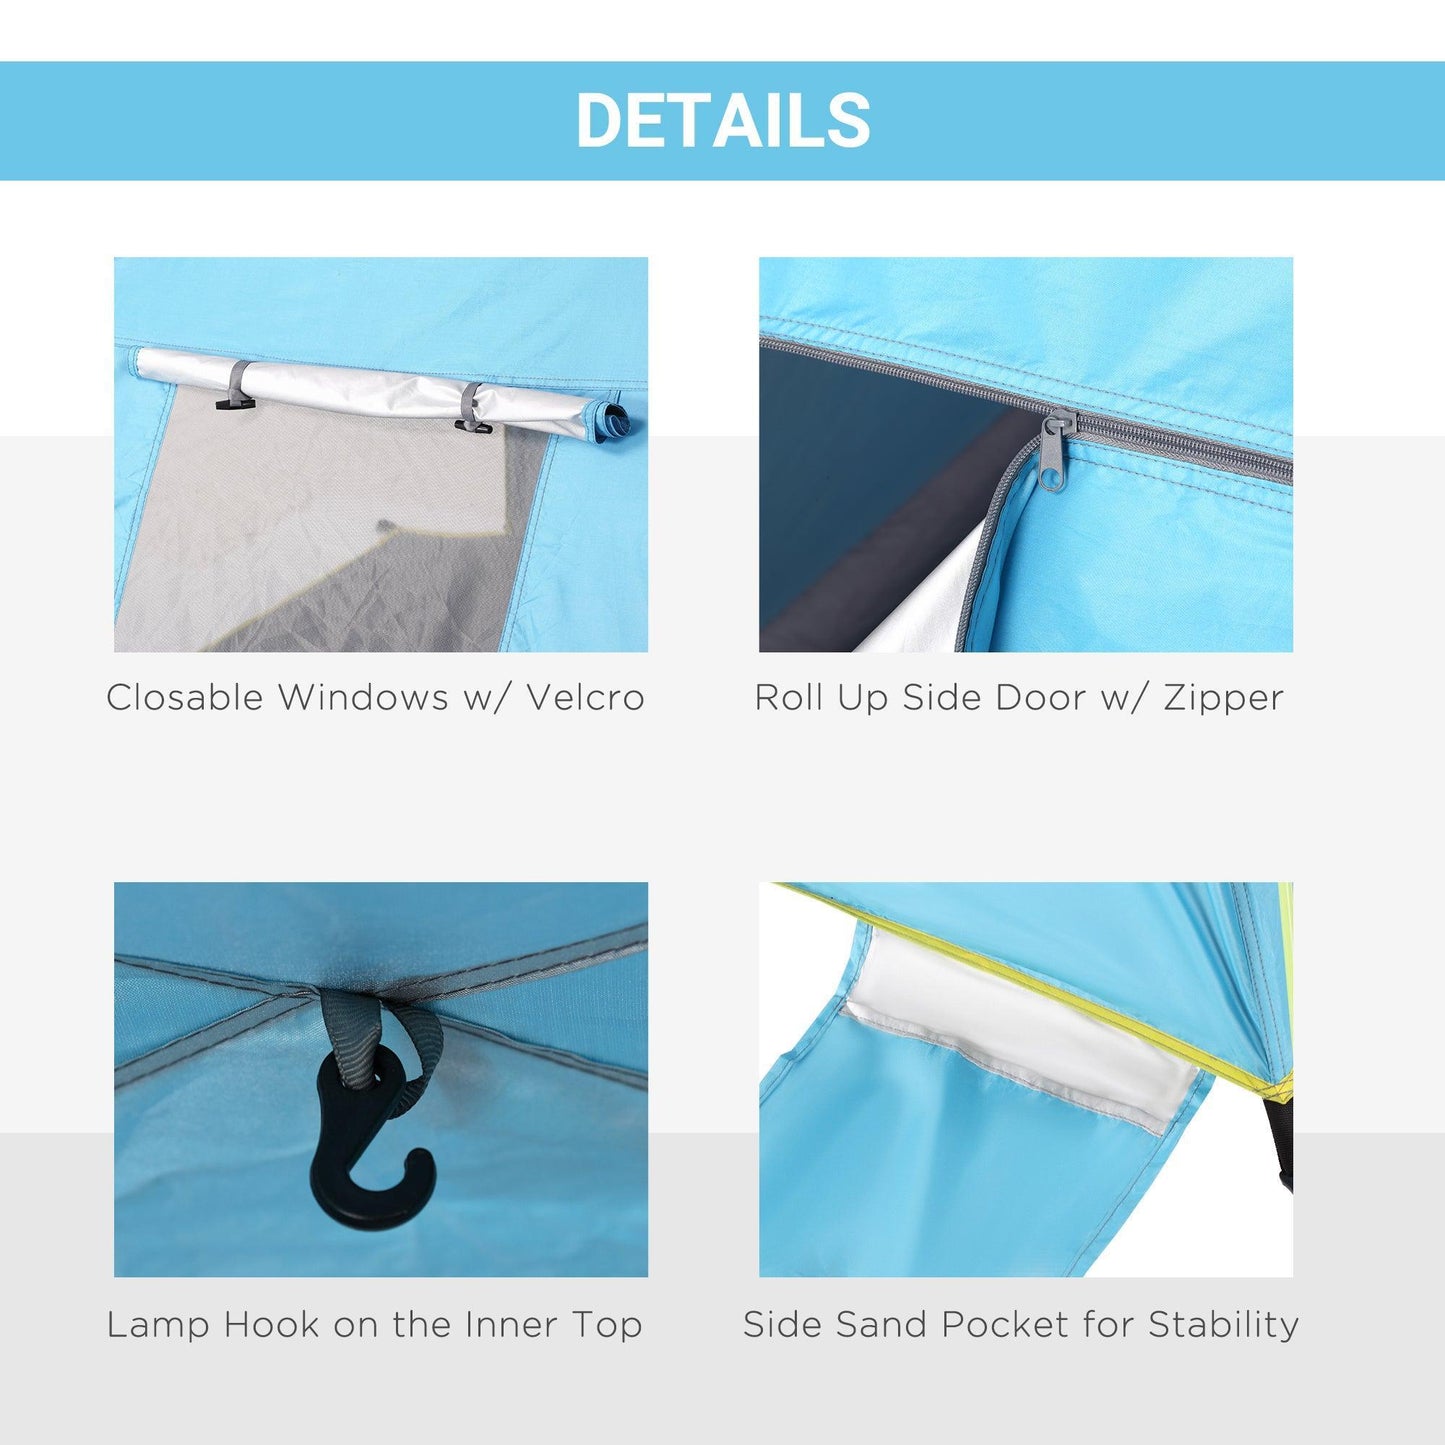 Outsunny Portable UV Beach Tent - 1-2 Person, Blue - ALL4U RETAILER LTD